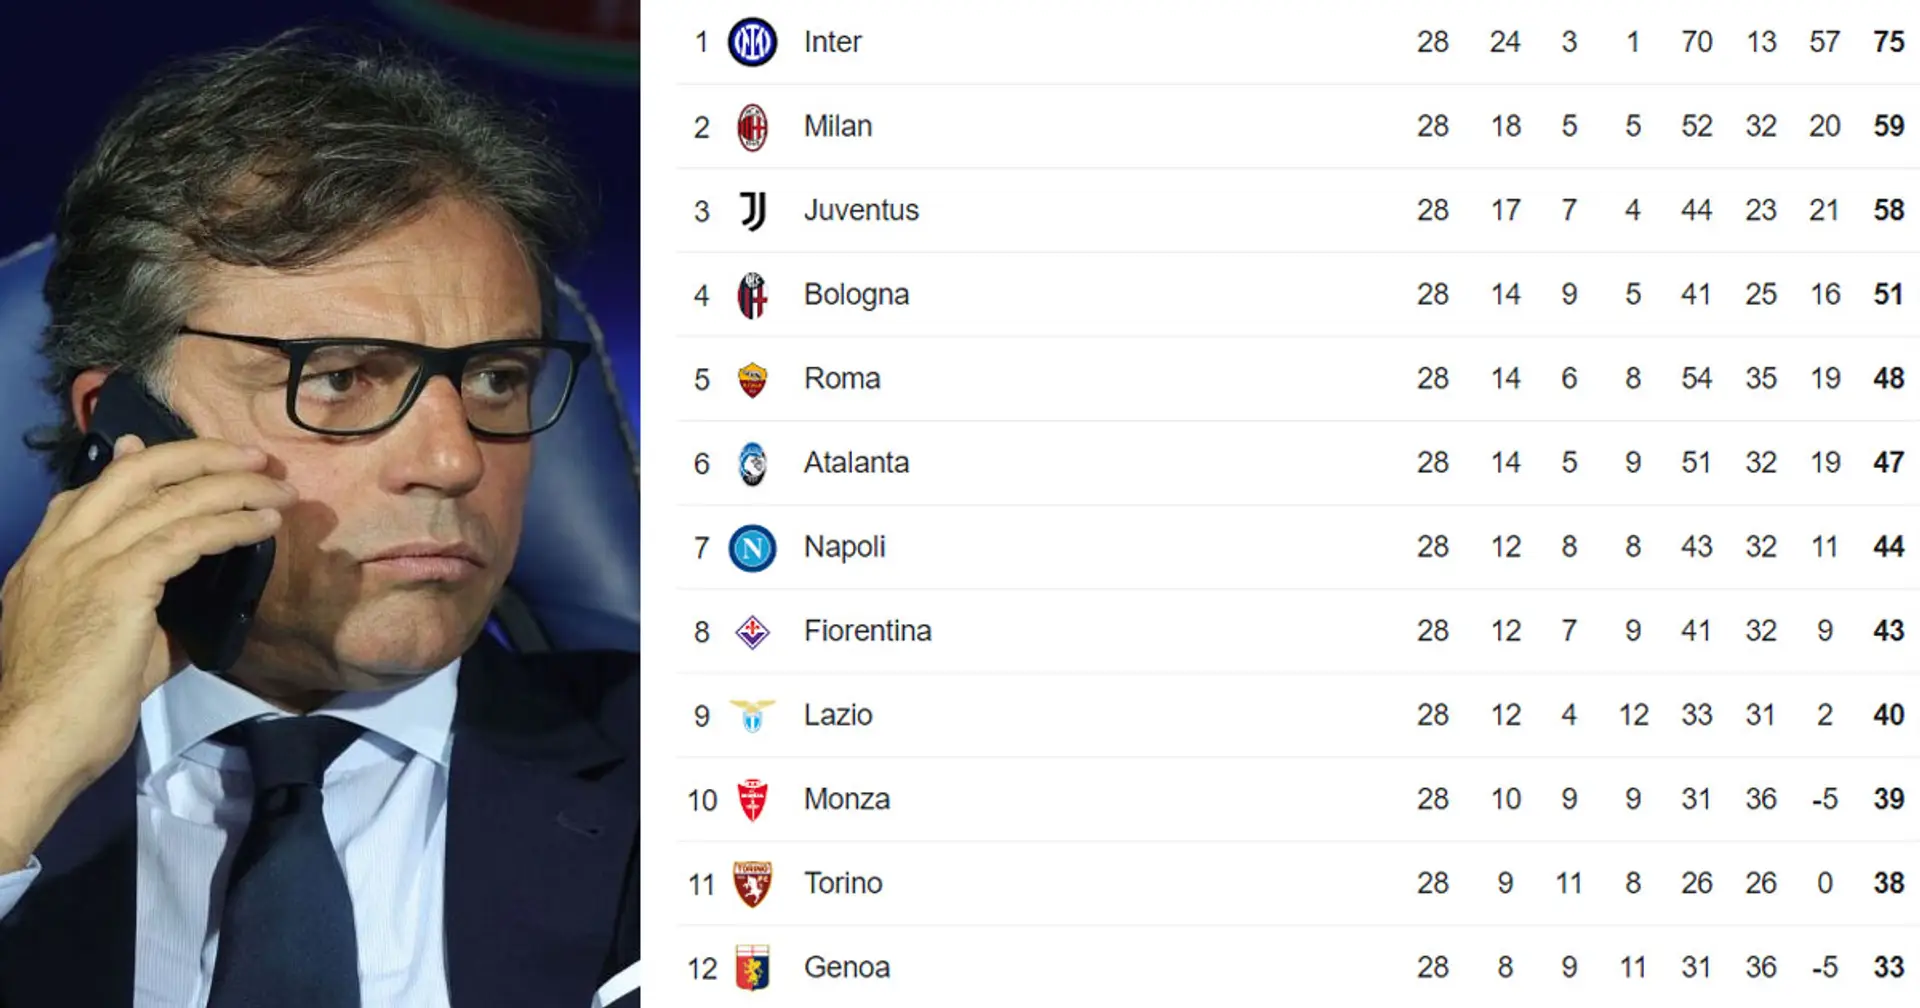 2° posto importante per la Juventus: svelato quanto può valere arrivare davanti al Milan